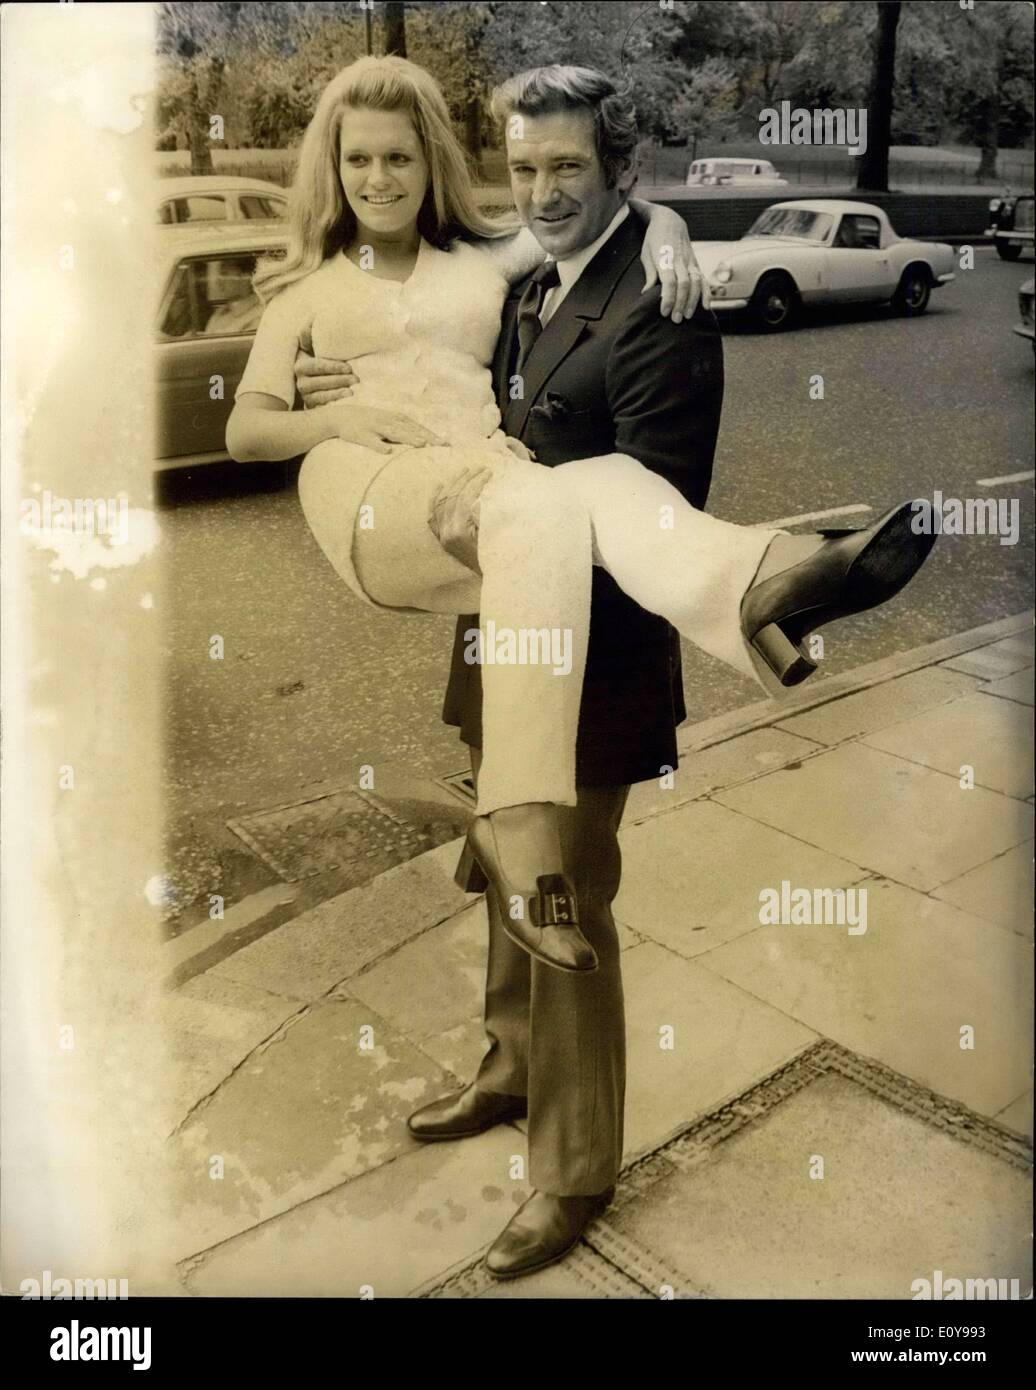 18 mai 1969 - Réception pour Rod Taylor et Carol White - Stars du nouveau film ''l'homme qui avait le pouvoir sur les femmes'' : un communiqué de réception a eu lieu aujourd'hui pour des stars de cinéma, Rod Taylor et Carol White pour lancer le tournage à Londres demain de la nouvelle ambassade d'Avco film ''l'homme qui avait le pouvoir offrir aux femmes'', dans laquelle ils co-star. Carol est rappelé pour son rôle dans la star TV production ''Cathy Come Home'' et ''Poor Cow''. Photo montre Rod Taylor prend Carol White dans ses bras à l'extérieur du Club Playboy dans Park Lane où la presse réception a eu lieu aujourd'hui. Banque D'Images